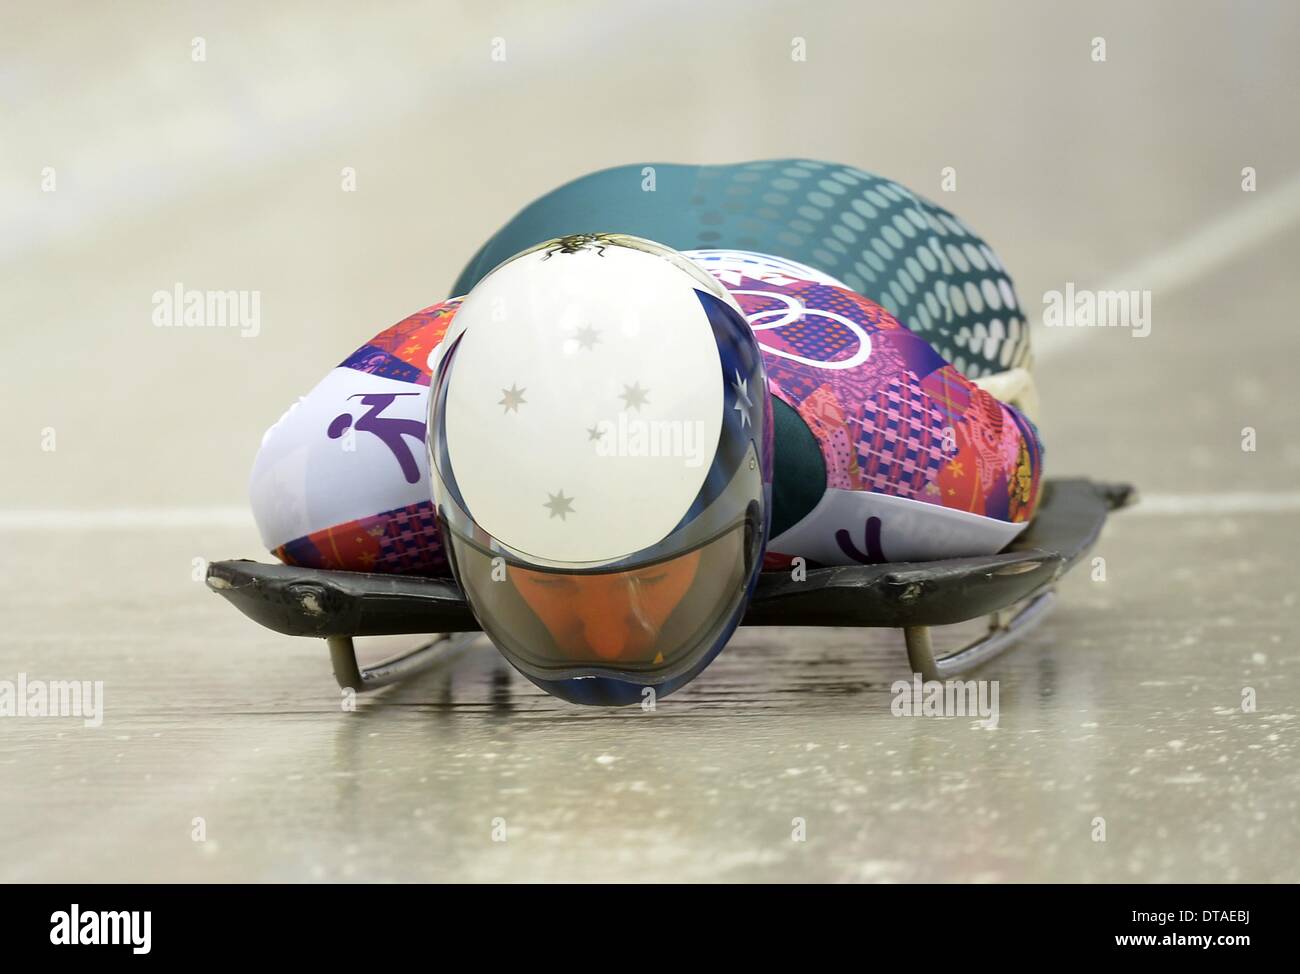 Winterspiele in Sotschi 2014: Lucy Chaffer (AUS). Womens Skelett - Sanki sliding Centre - Sotschi - Russland - 13.02.2014 Credit: Sport In Bilder/Alamy Live News Stockfoto